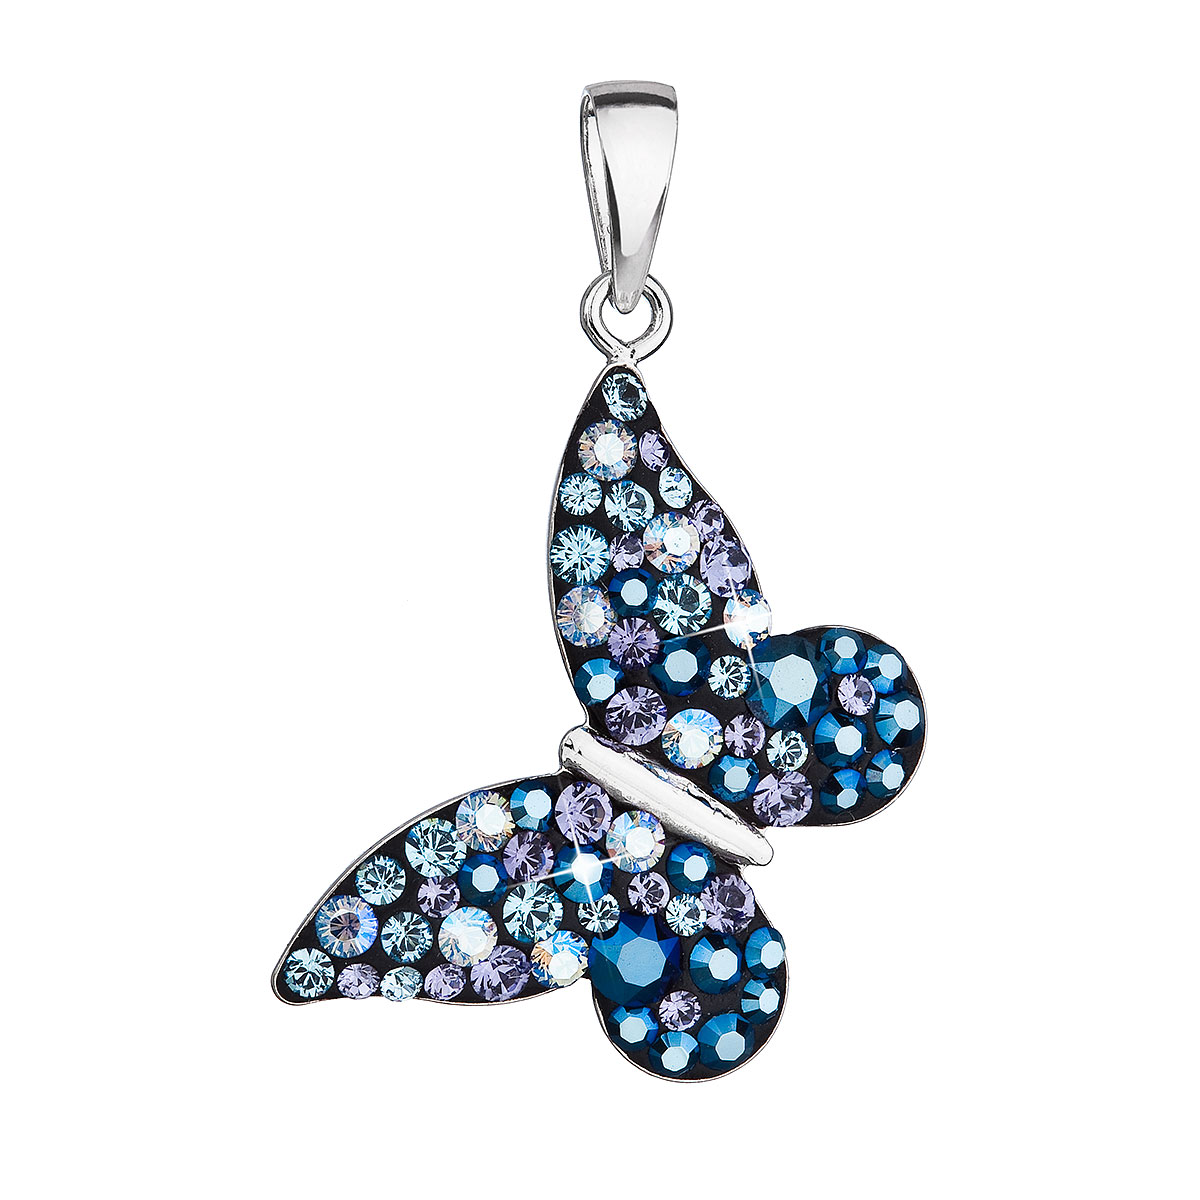 Evolution Group Stříbrný přívěsek s krystaly Swarovski modrý motýl 34192.3 blue style